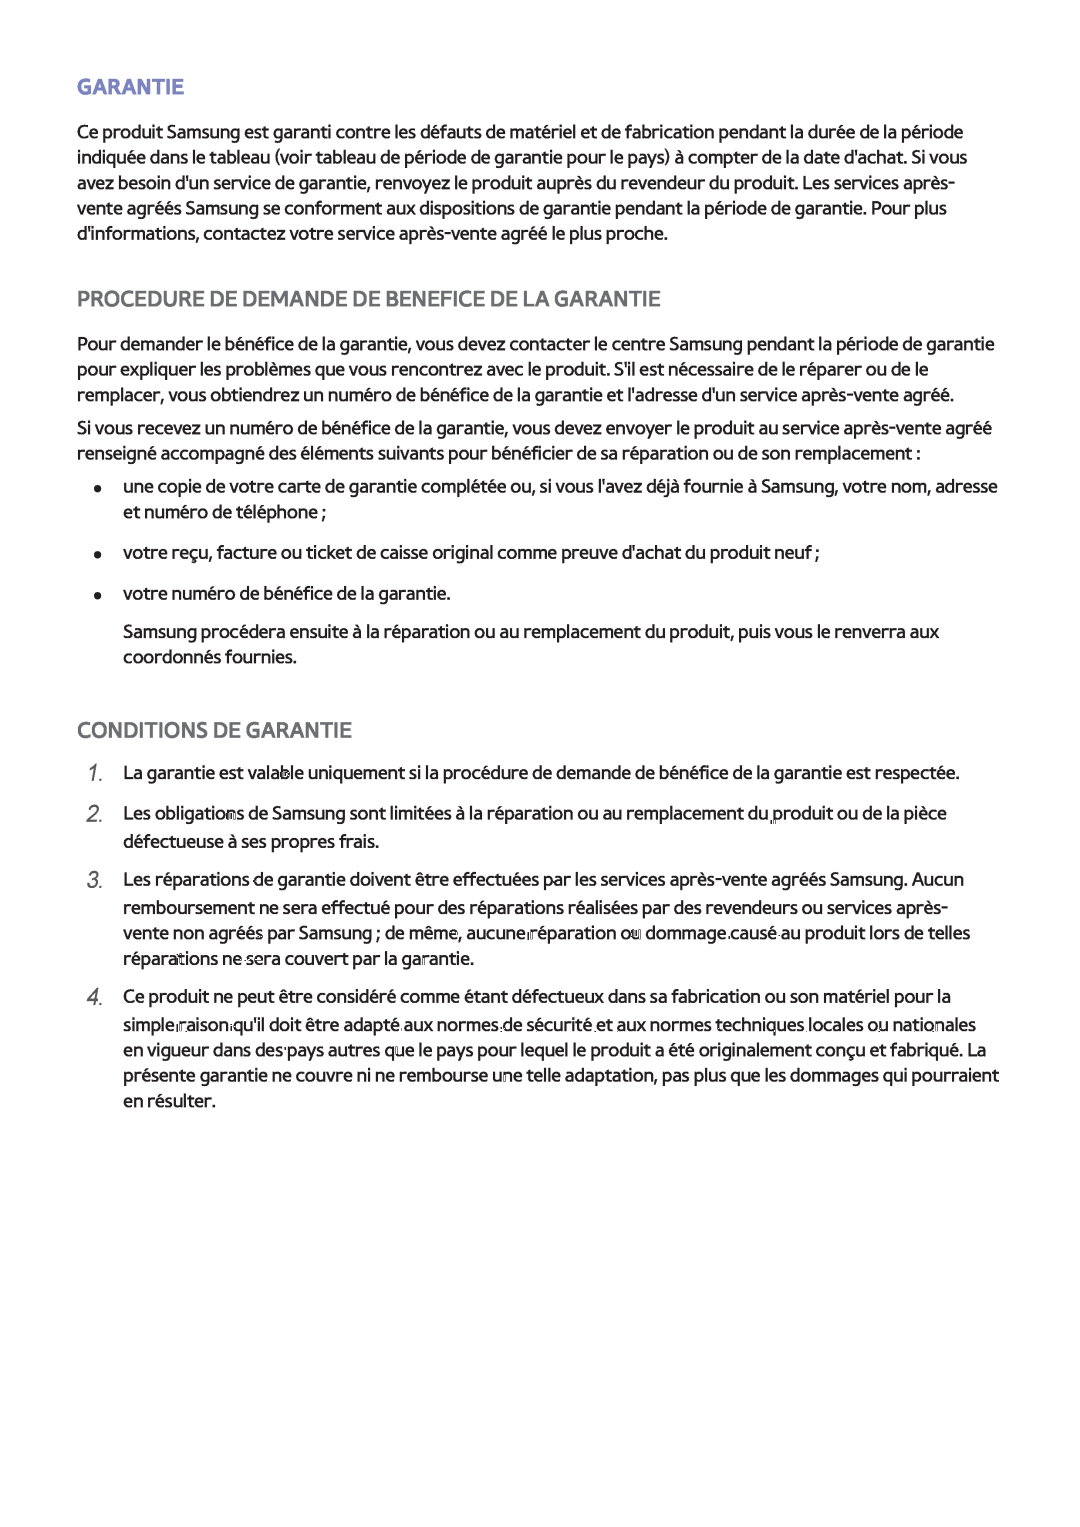 Samsung UE40F6200AWXZF manual Procedure De Demande De Benefice De La Garantie, Conditions De Garantie, 111 222 